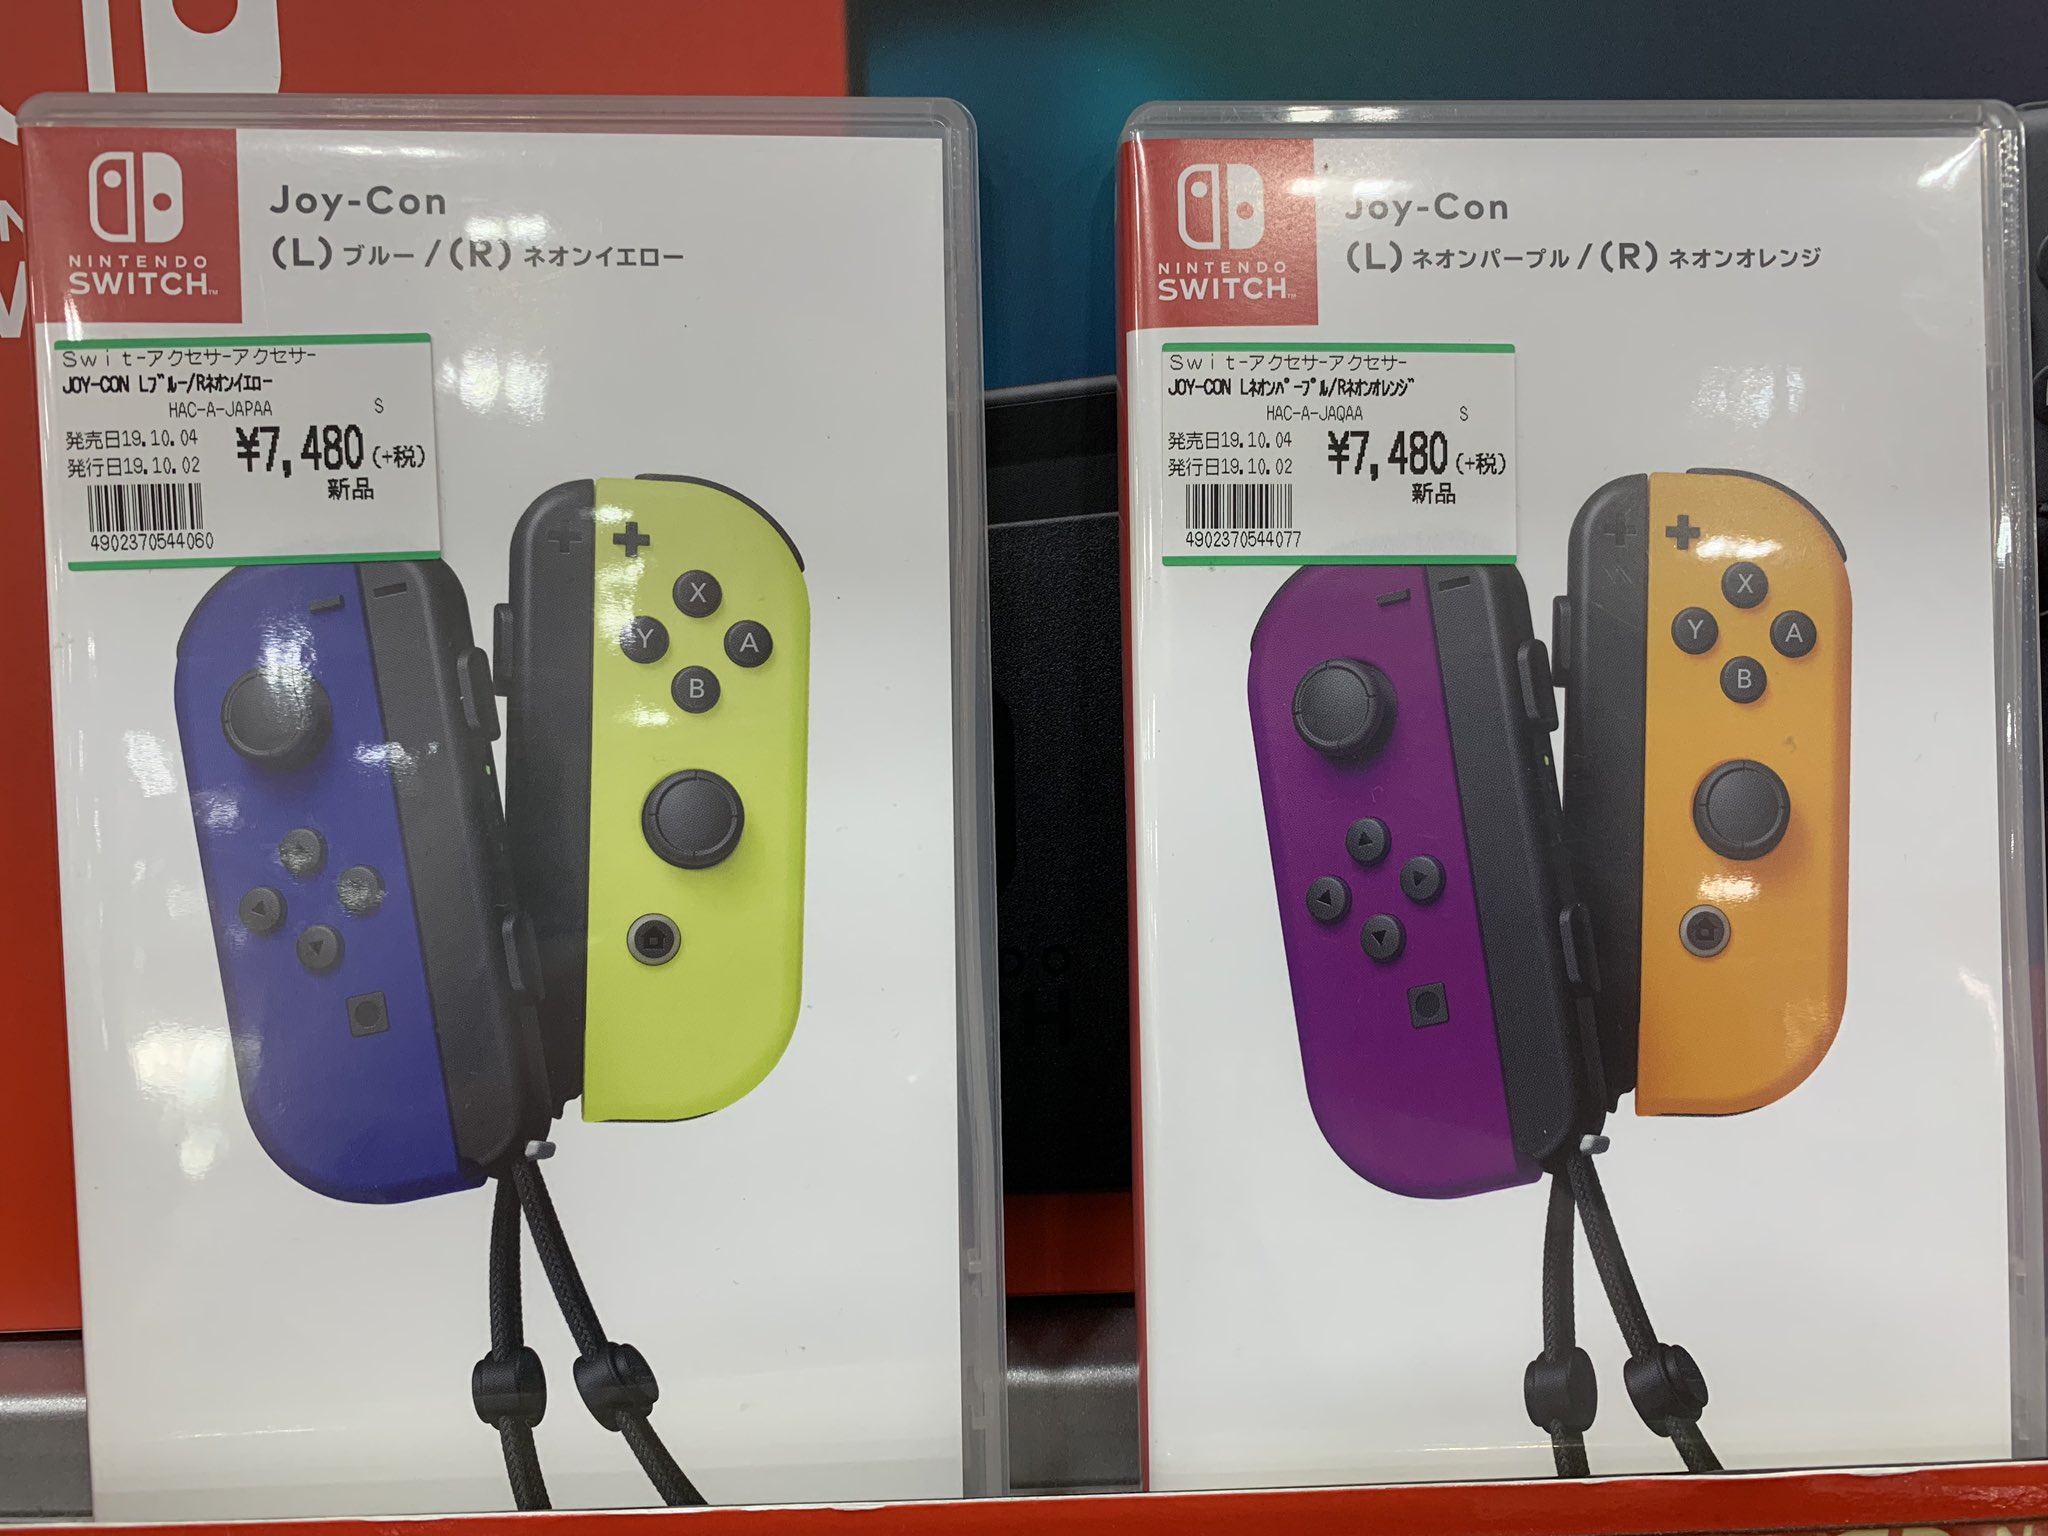 フタバ図書 Giga防府店 Nintendo Switchのジョイコン Newカラーが本日発売です ブルーと ネオンイエロー そしてハロウィンカラーのパープルとオレンジの2種類です 今の時期にピッタリなとってもカラフルなジョイコン めちゃくちゃ